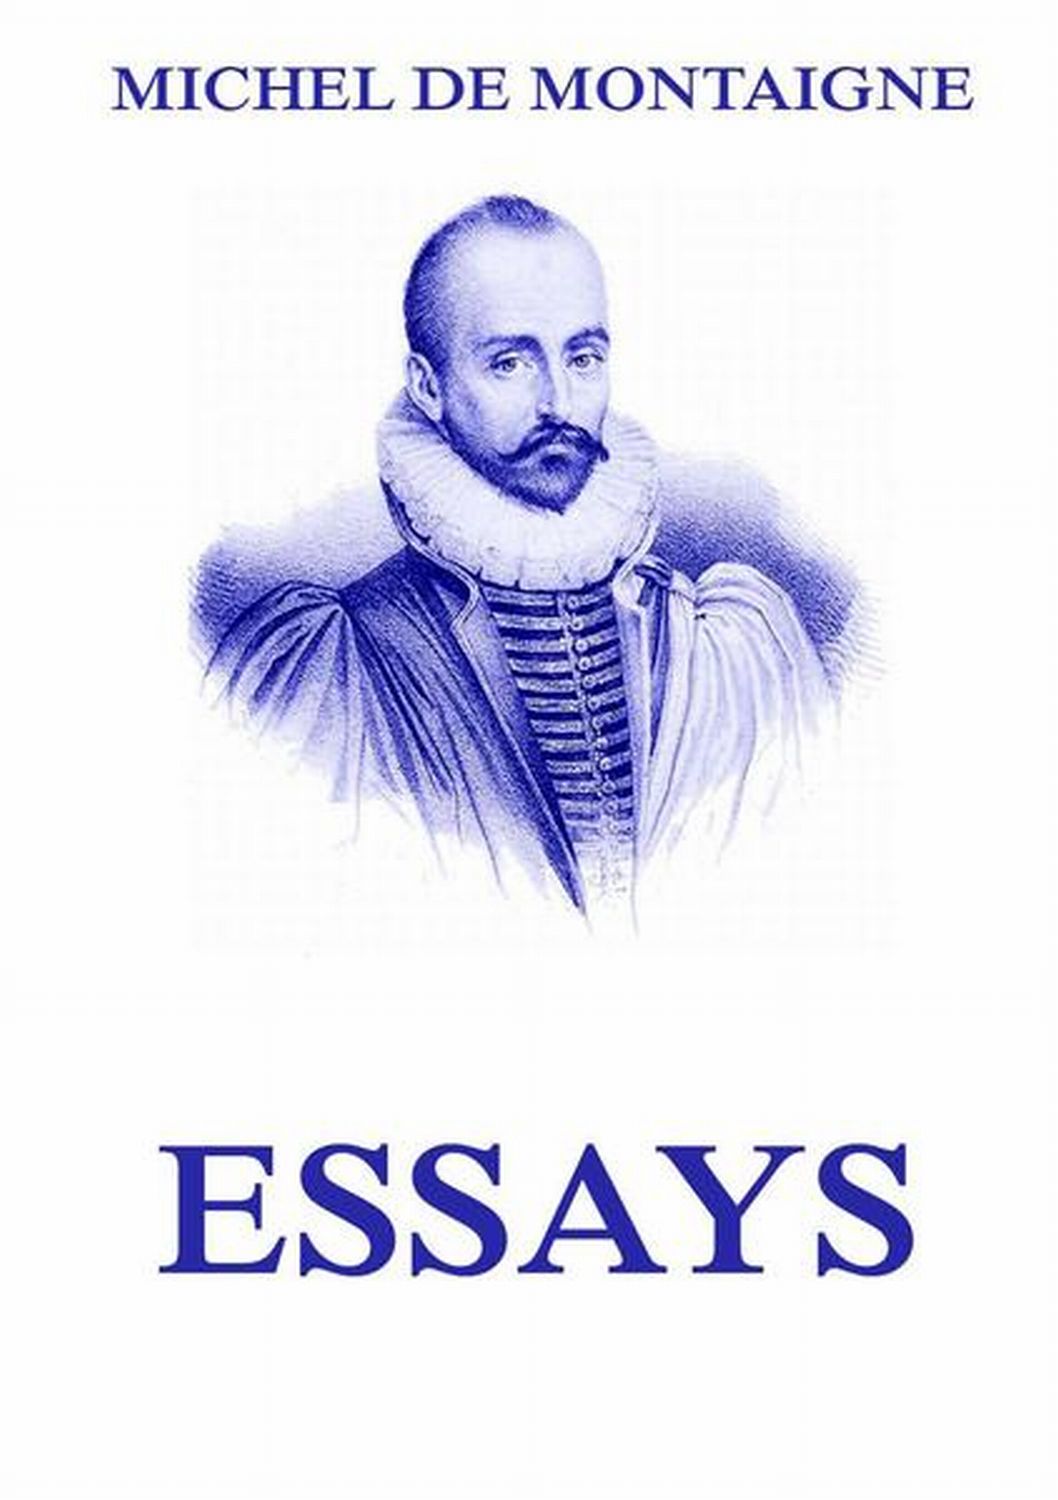 montaigne essays analysis